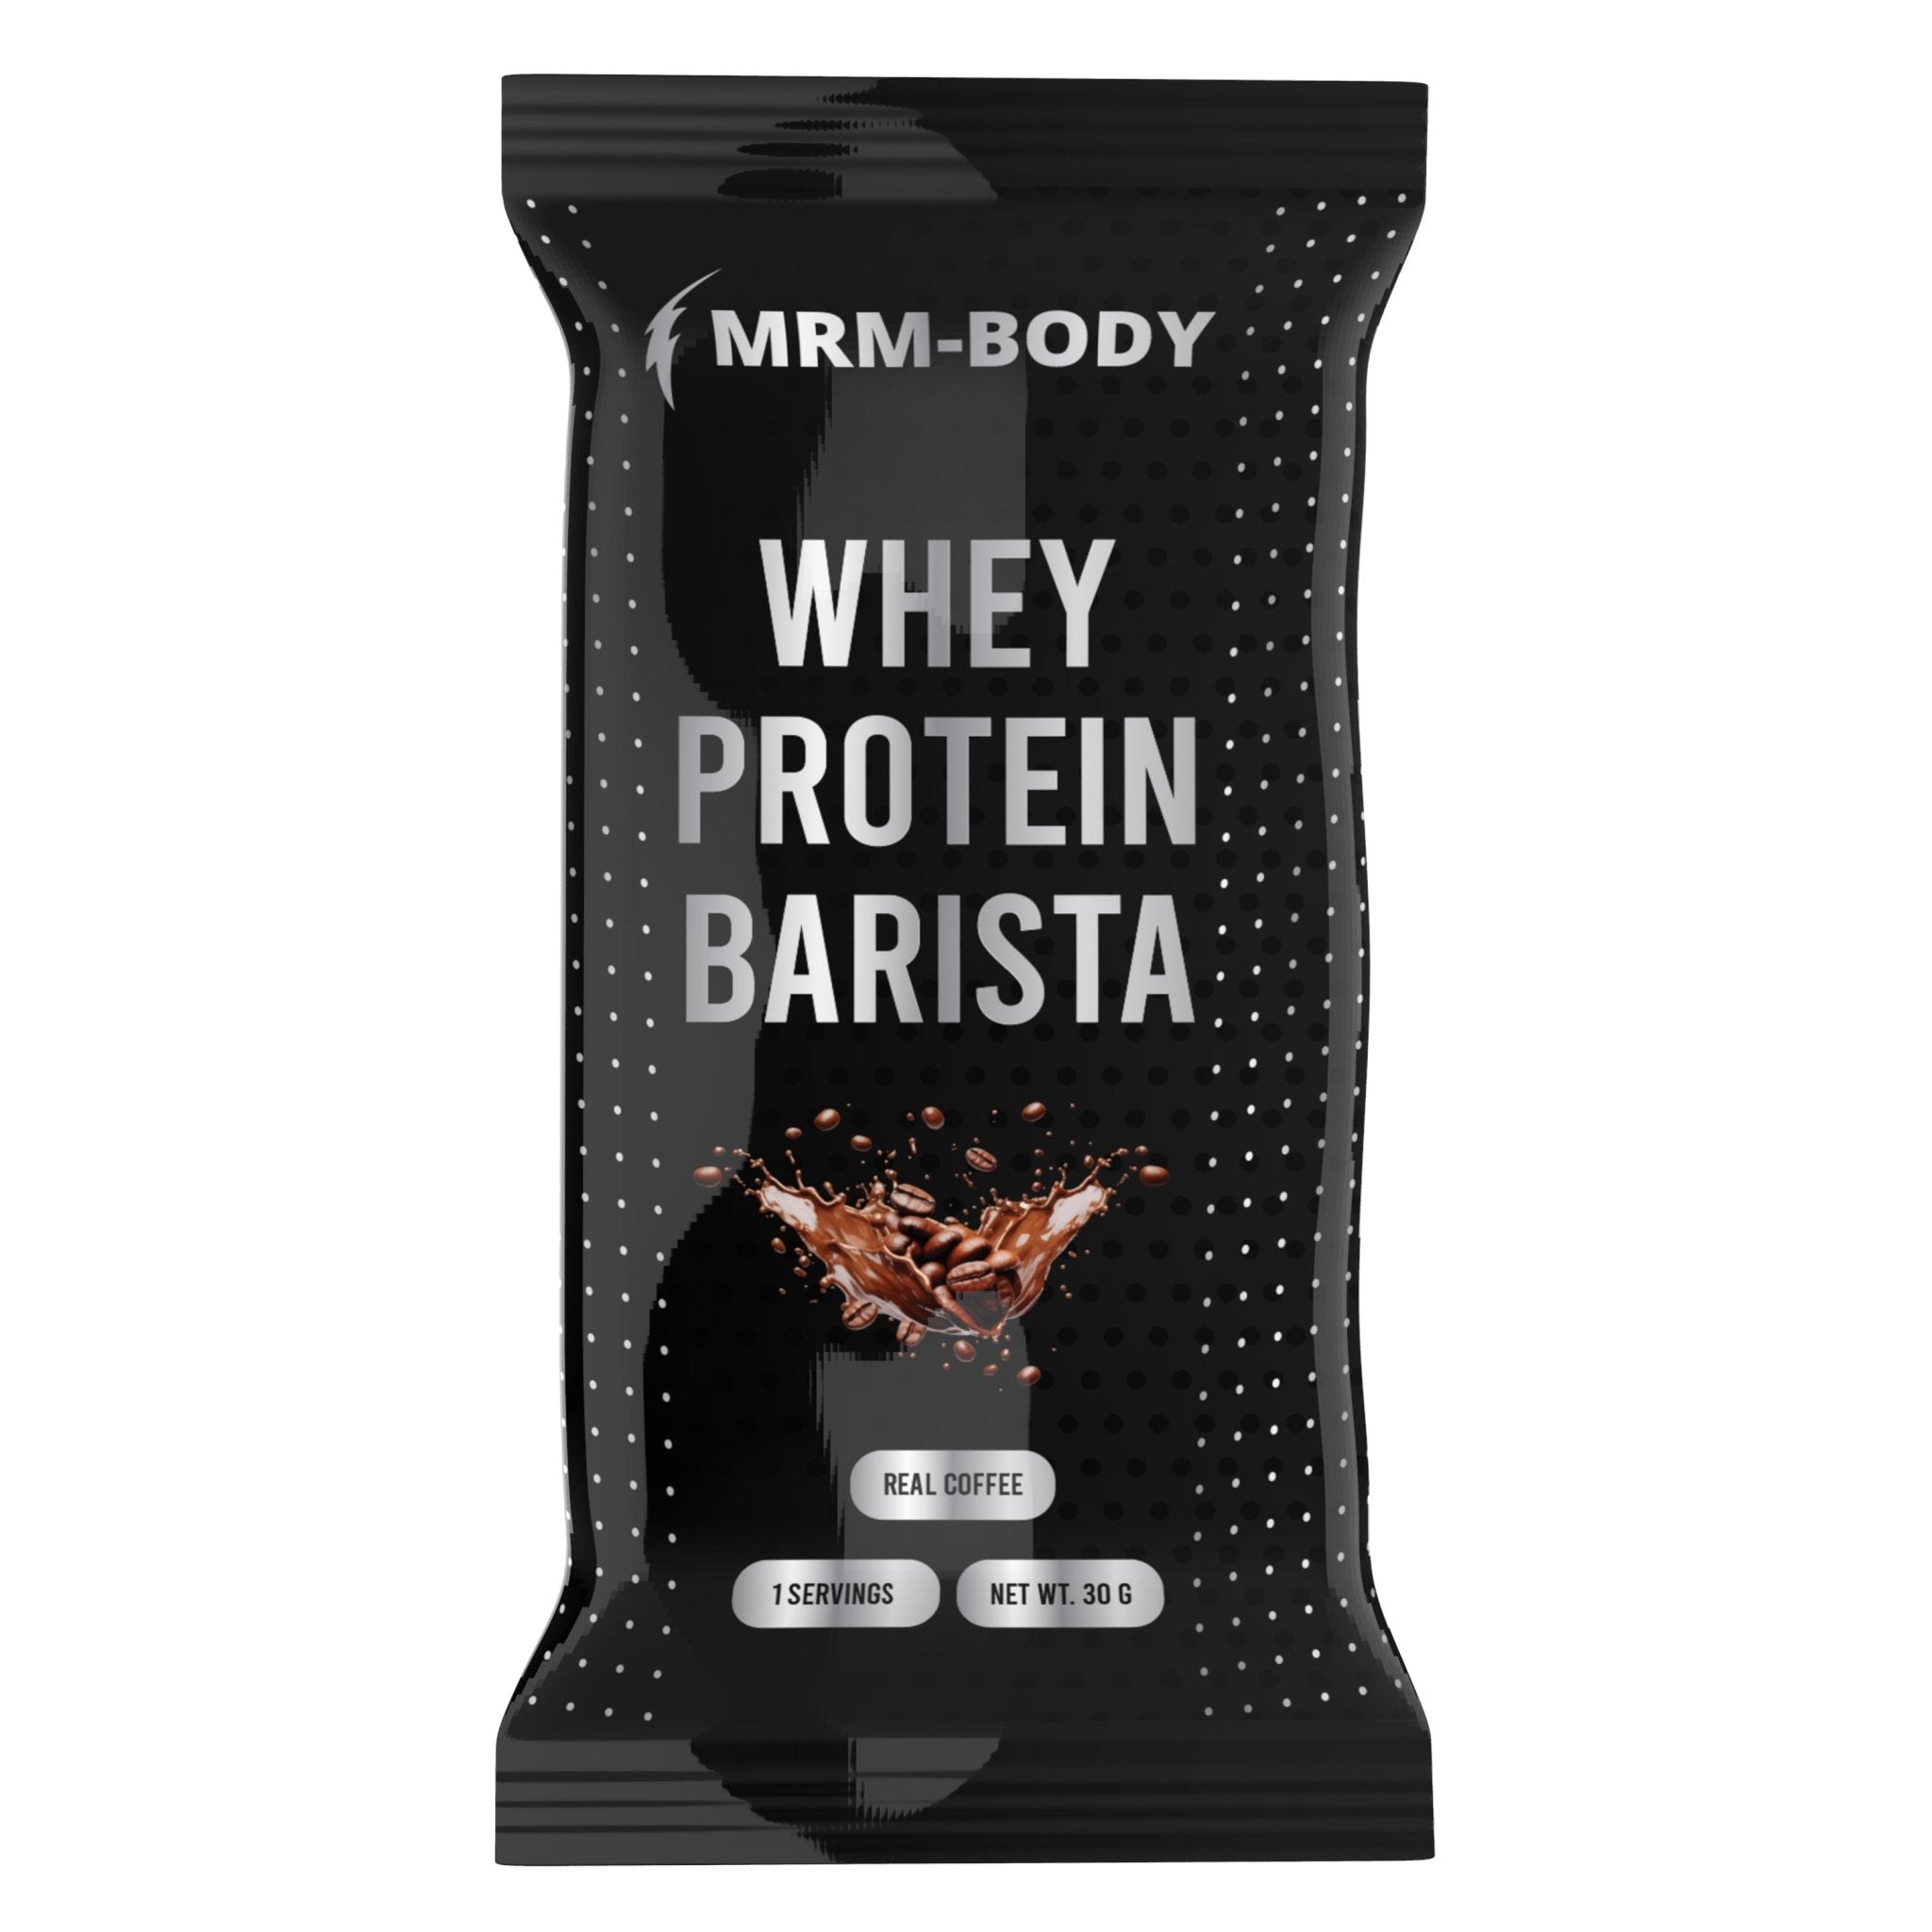 Whey Protein Barista - Campione - MRM-BODY